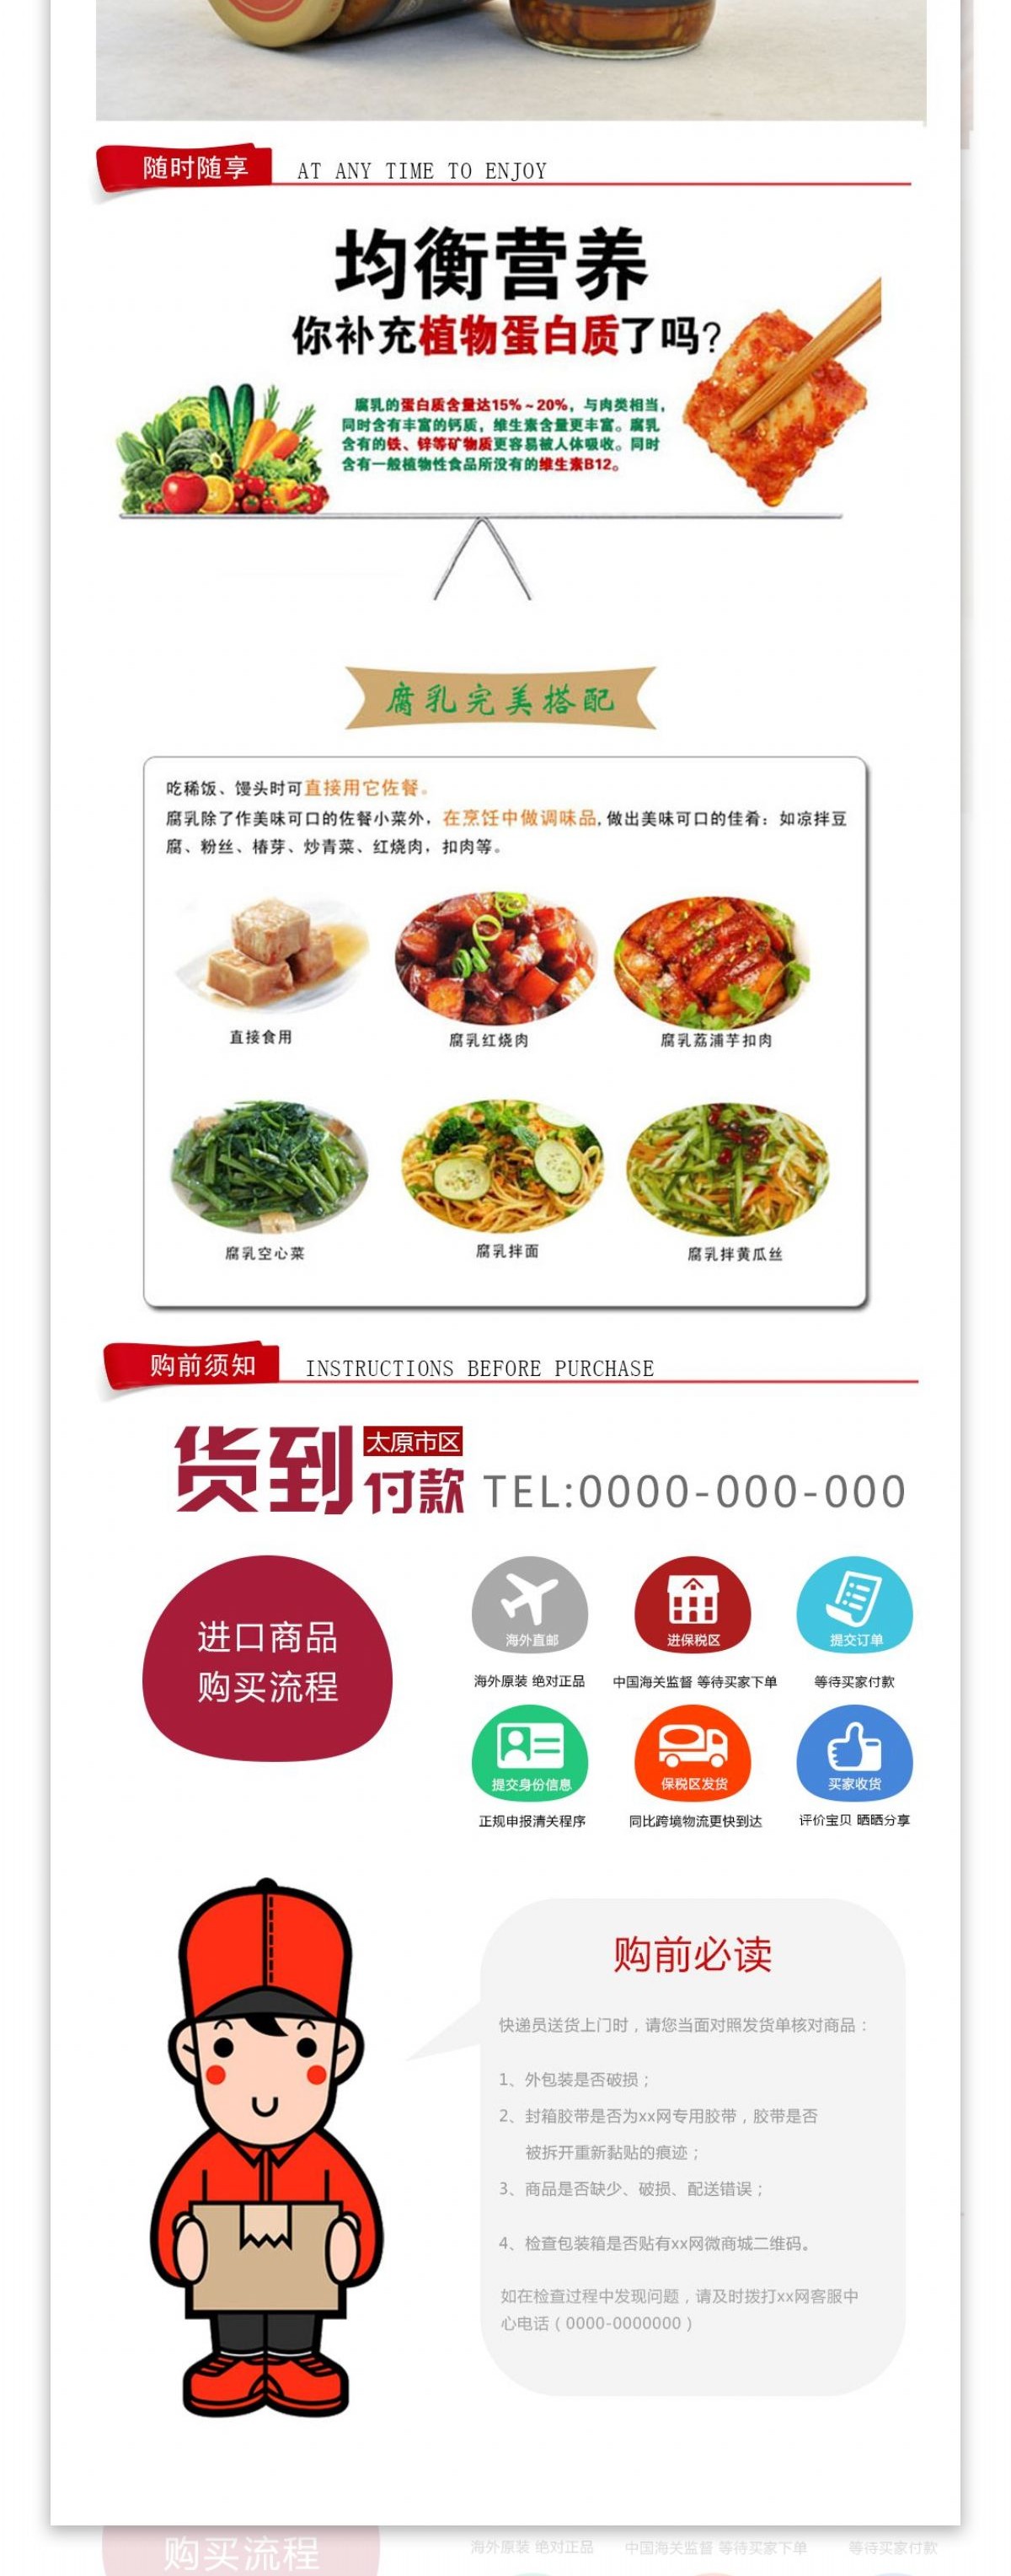 台湾江记豆腐乳移动设备终端网络设计